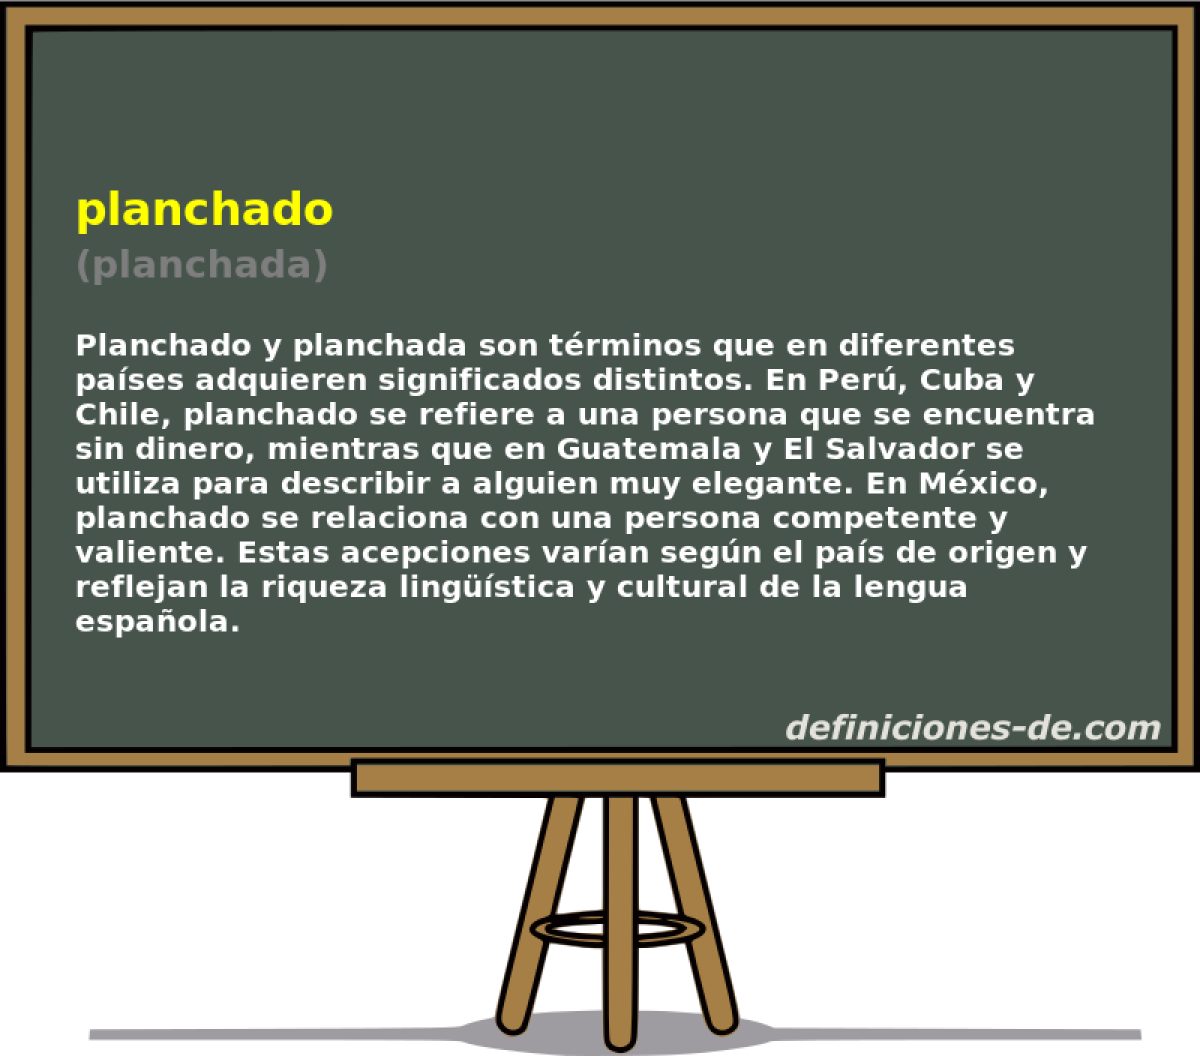 planchado (planchada)